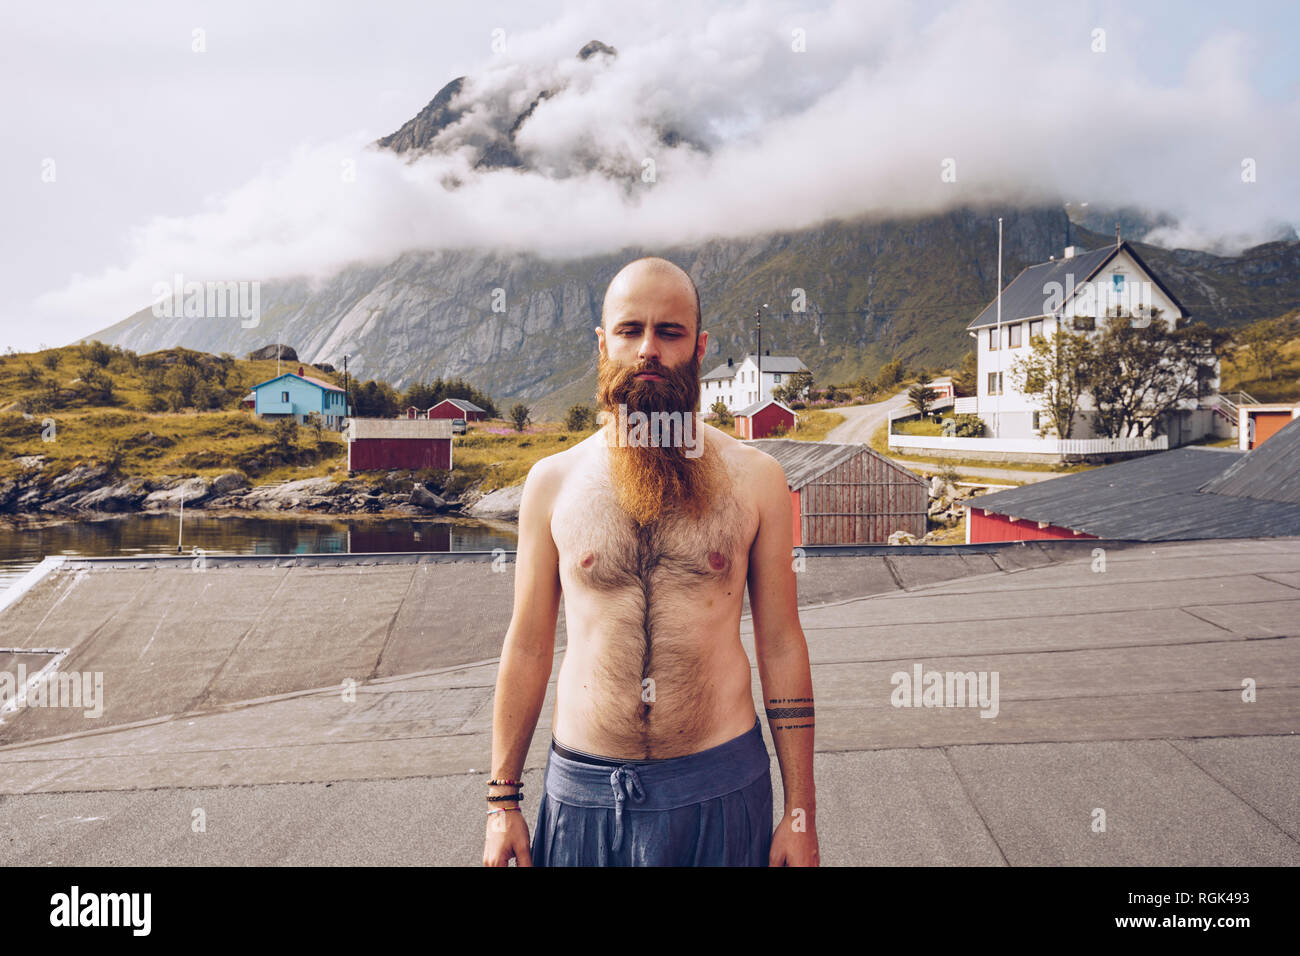 Norvegia Lofoten, ritratto di shirtless uomo con barba completa Foto Stock